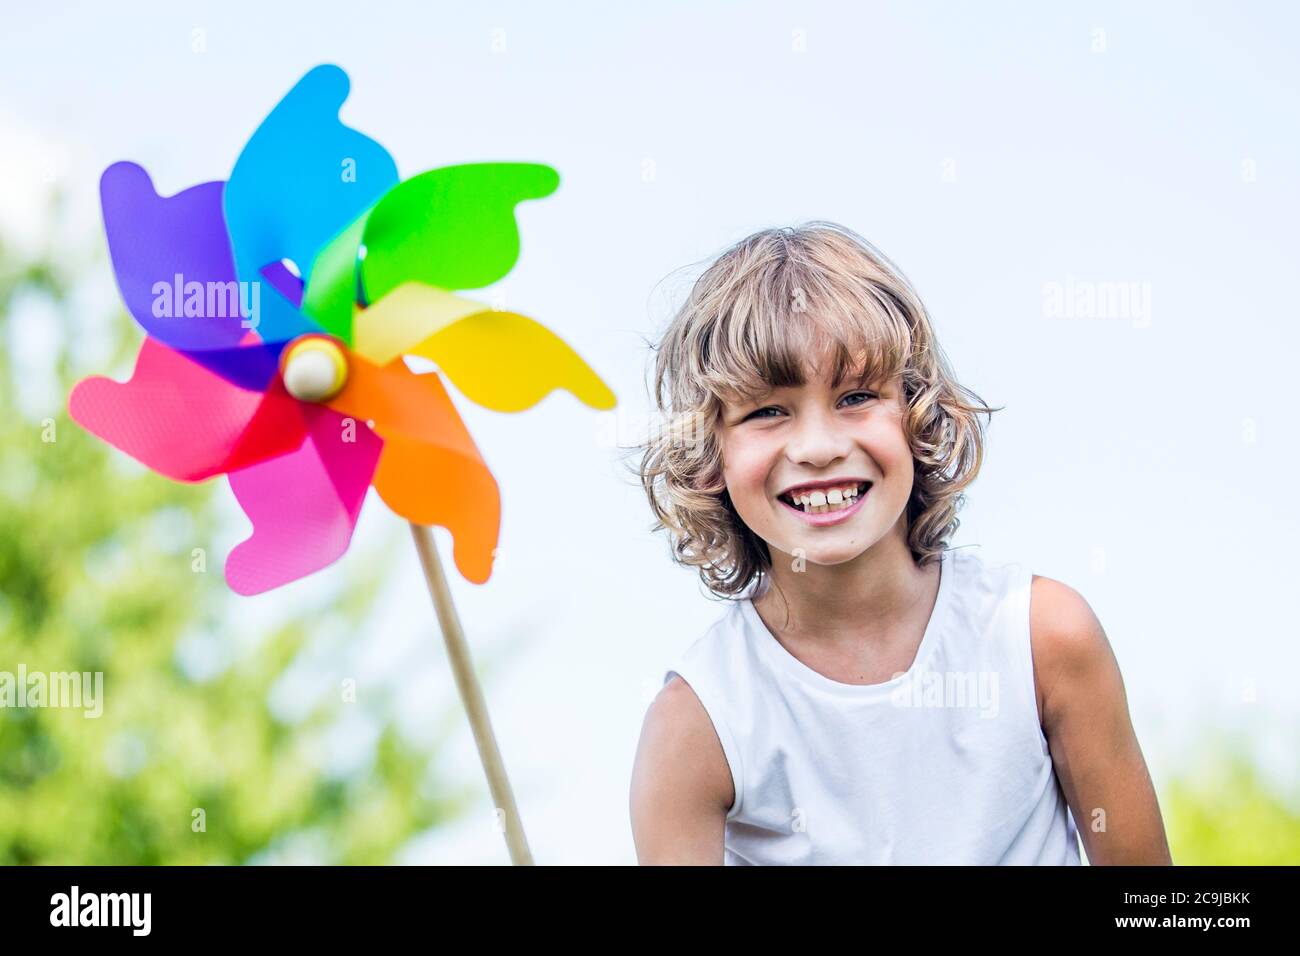 Niño sosteniendo un molino de papel, sonriendo. Foto de stock